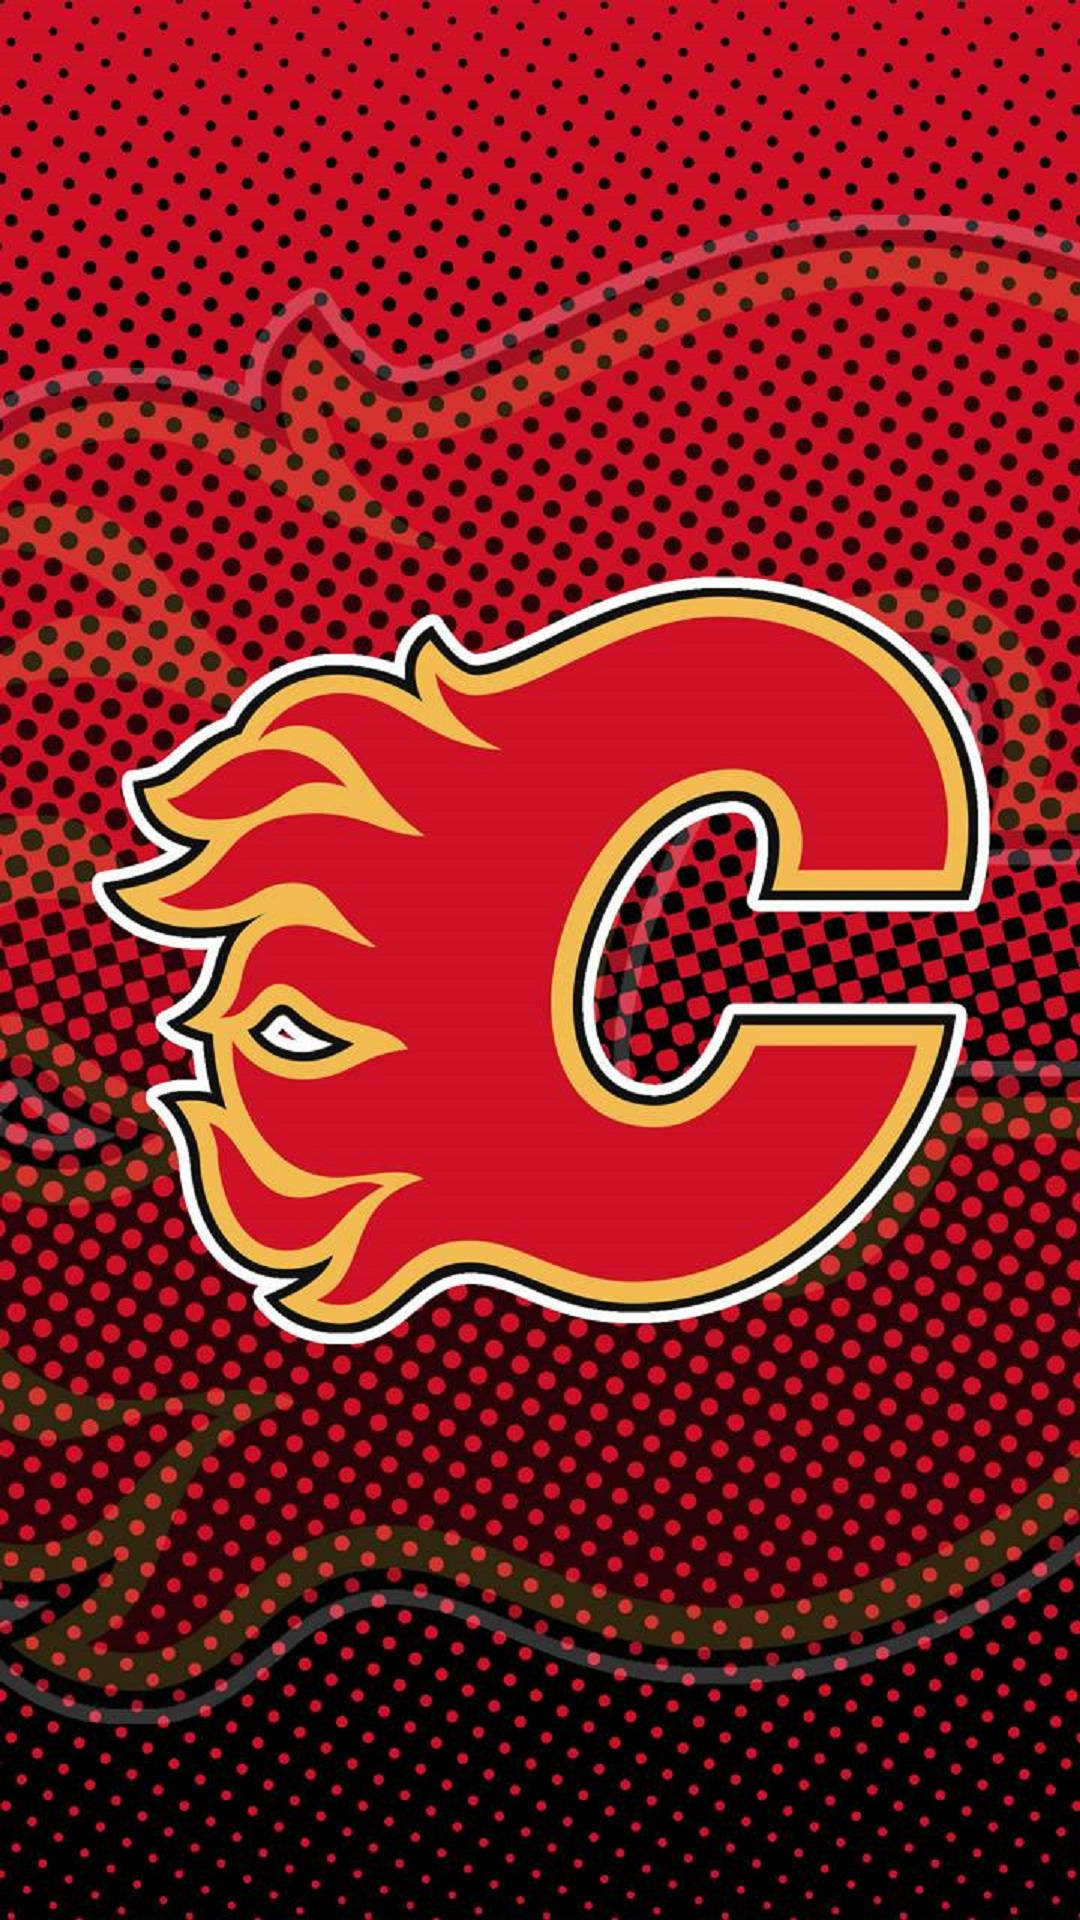 Rød og sort prikket Calgary Flames Logo Wallpaper